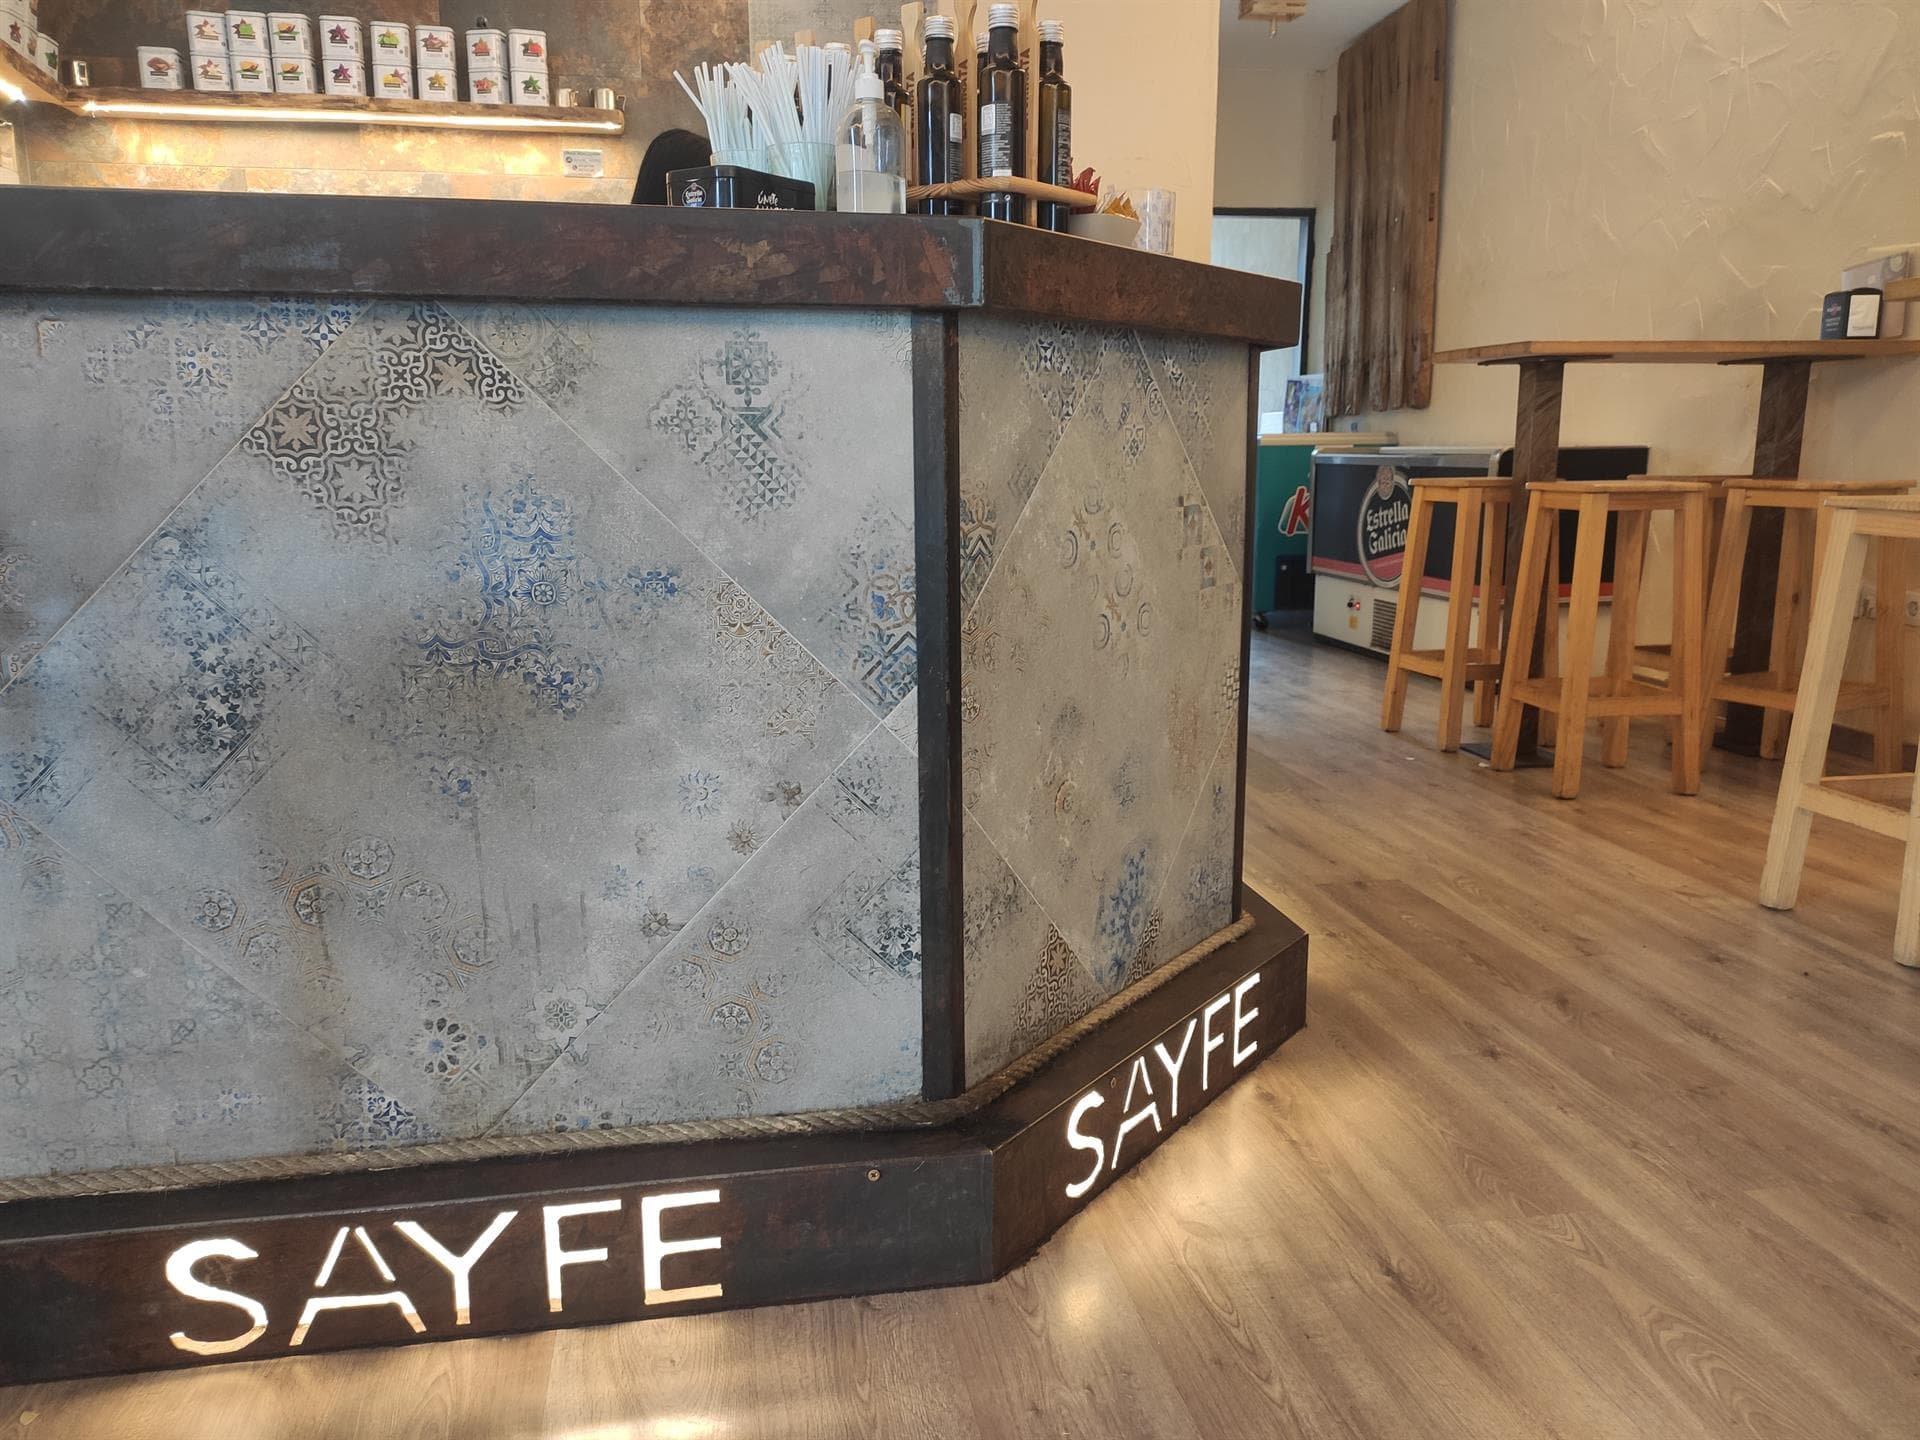 Nuestras instalaciones - Sayfe 2.0